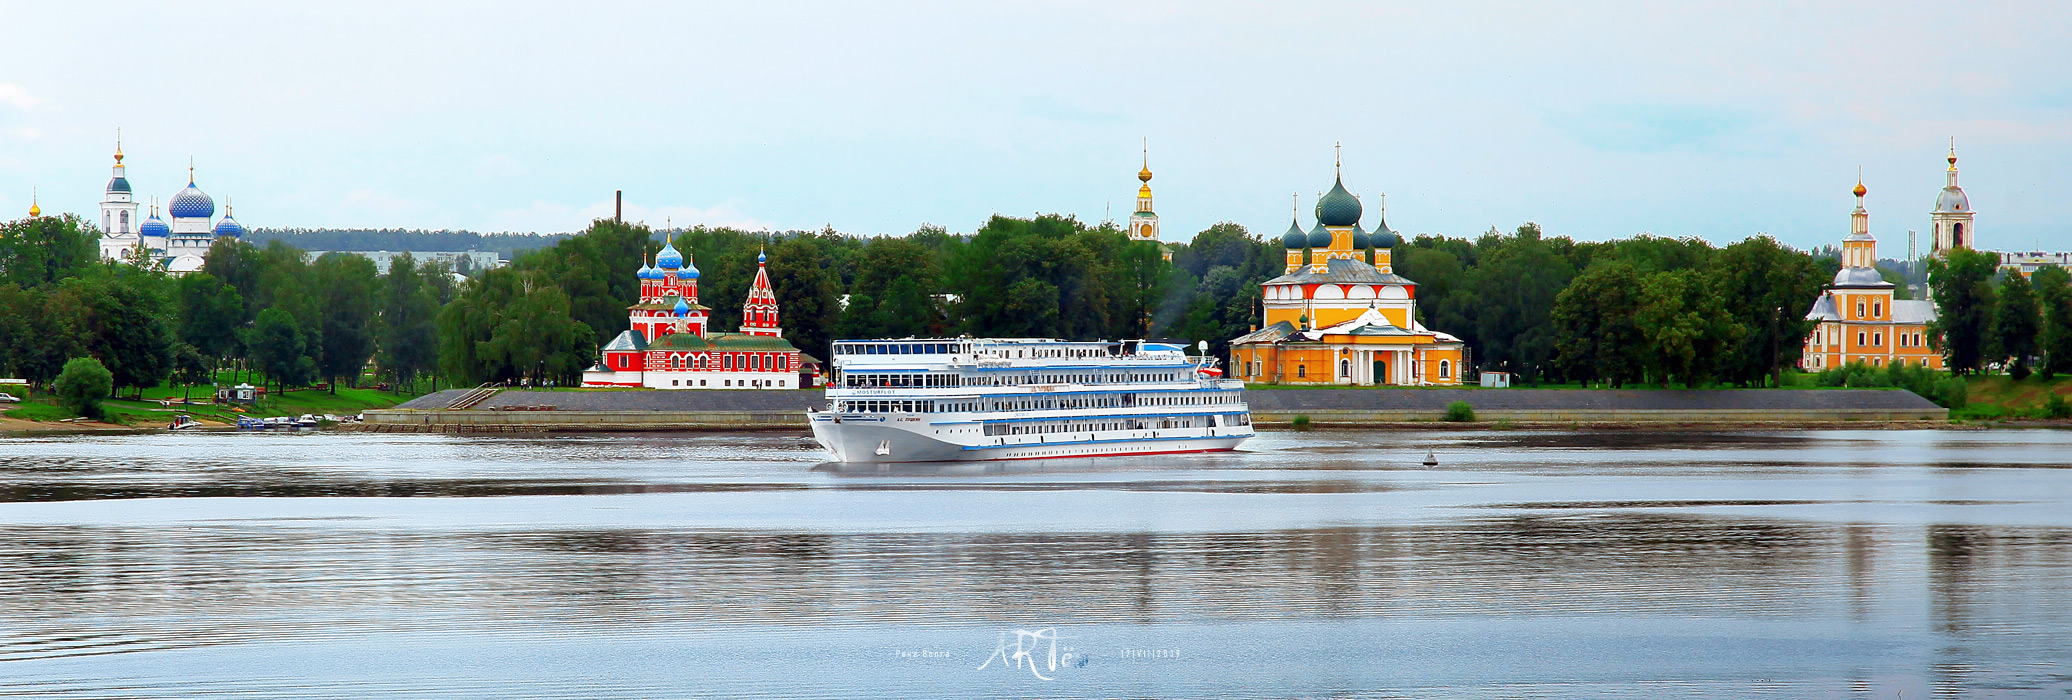 Фотозарисовки, Московский речной бассейн